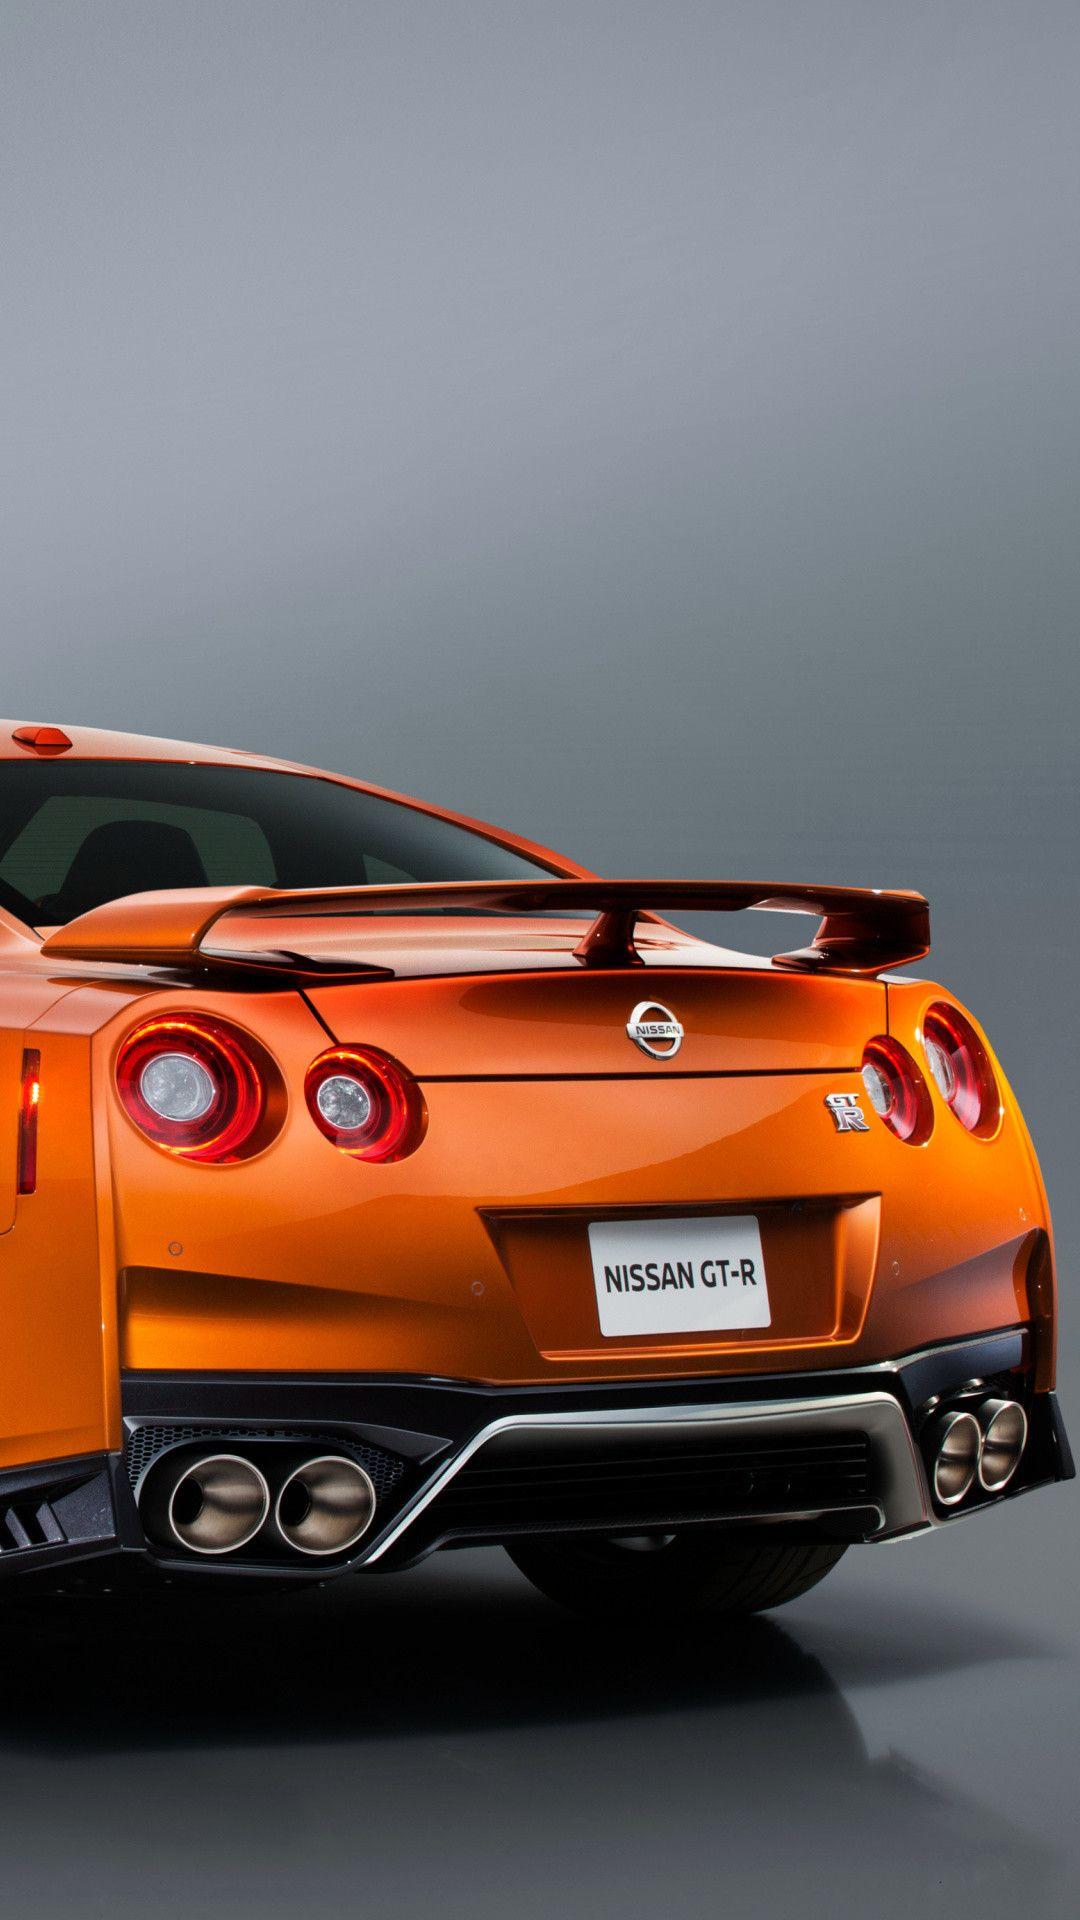 Nissan Gtr Orange Wallpaper